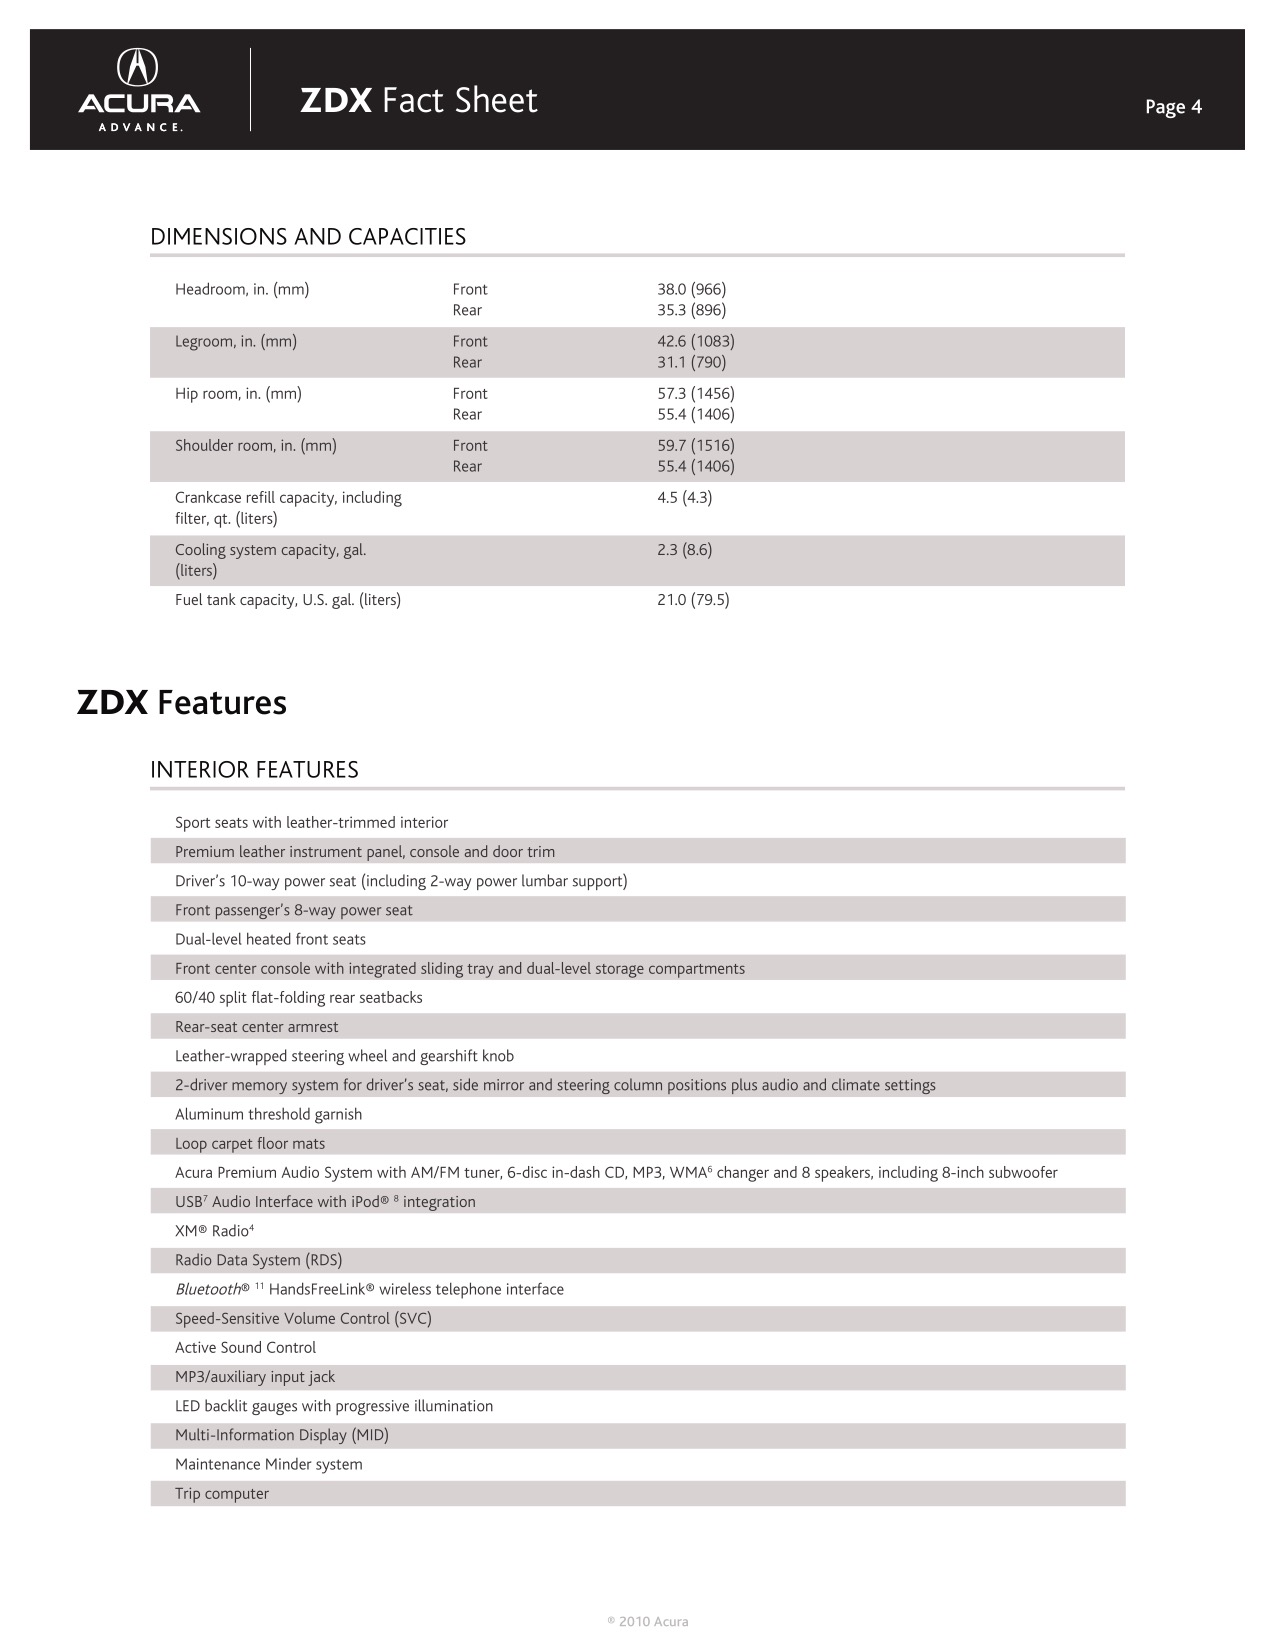 2010 Acura ZDX Brochure Page 6